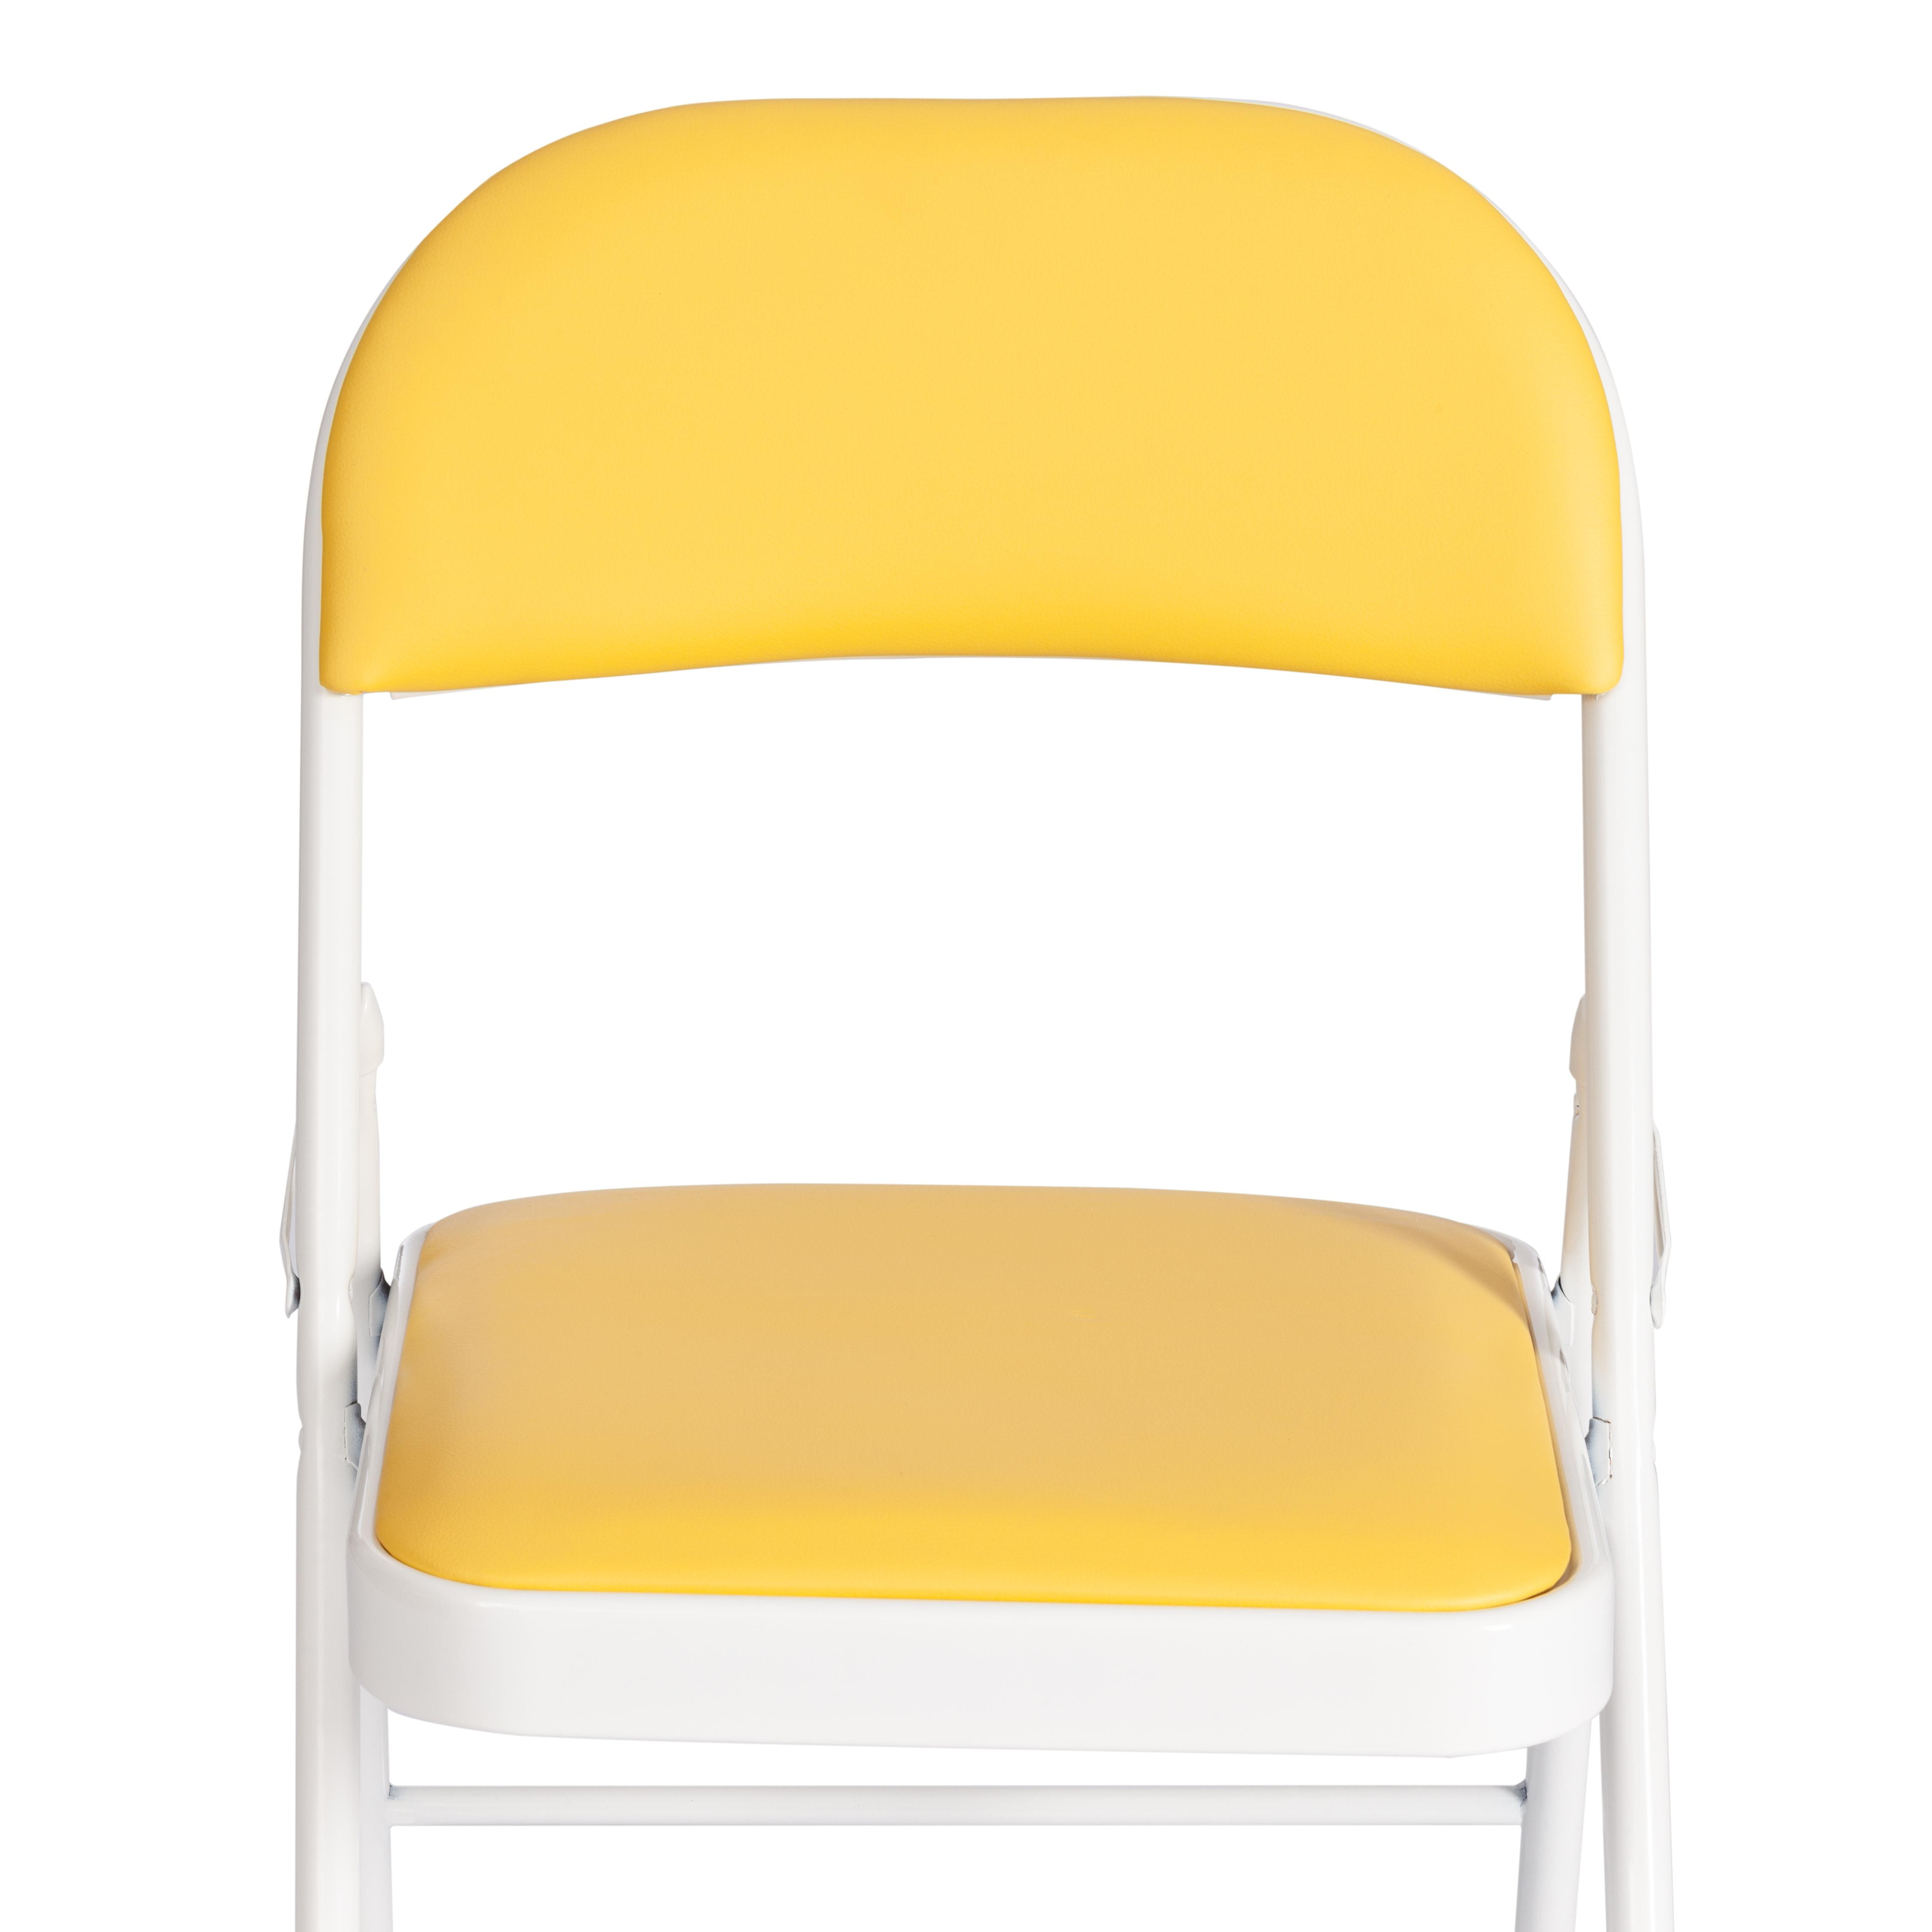 Стул складной FOLDER (mod. 3022G) каркас: металл, сиденье/спинка: экокожа, 46.5 х 47.5 х 79 см, yellow (желтый) / white (белый)